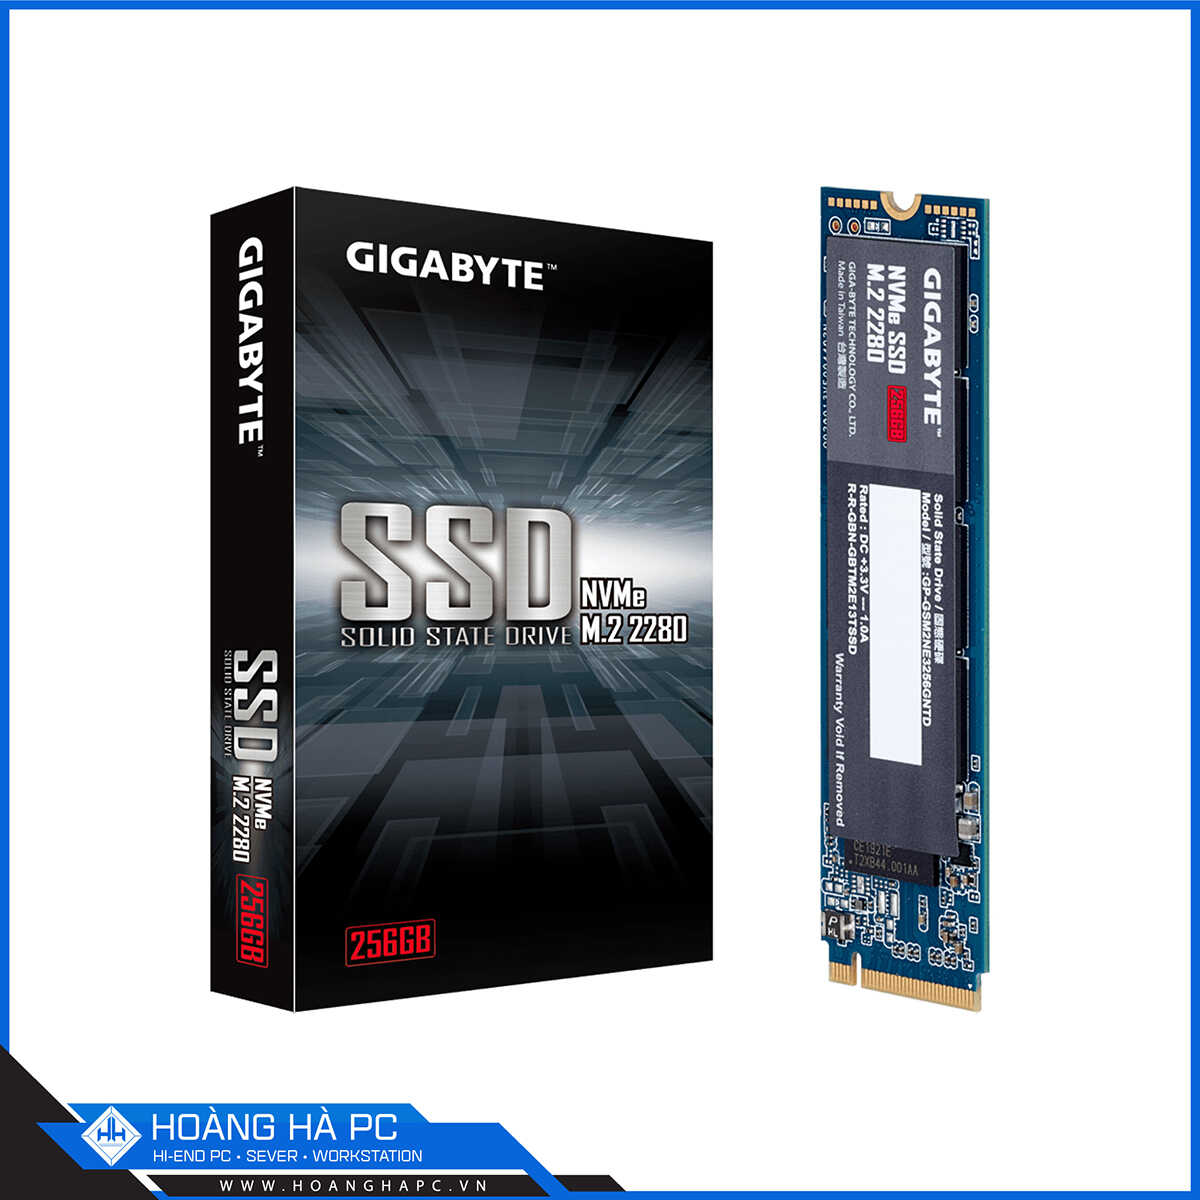 >GIGABYTE NVMe SSD 256GB M.2 2280 NVMe Gen3 x4